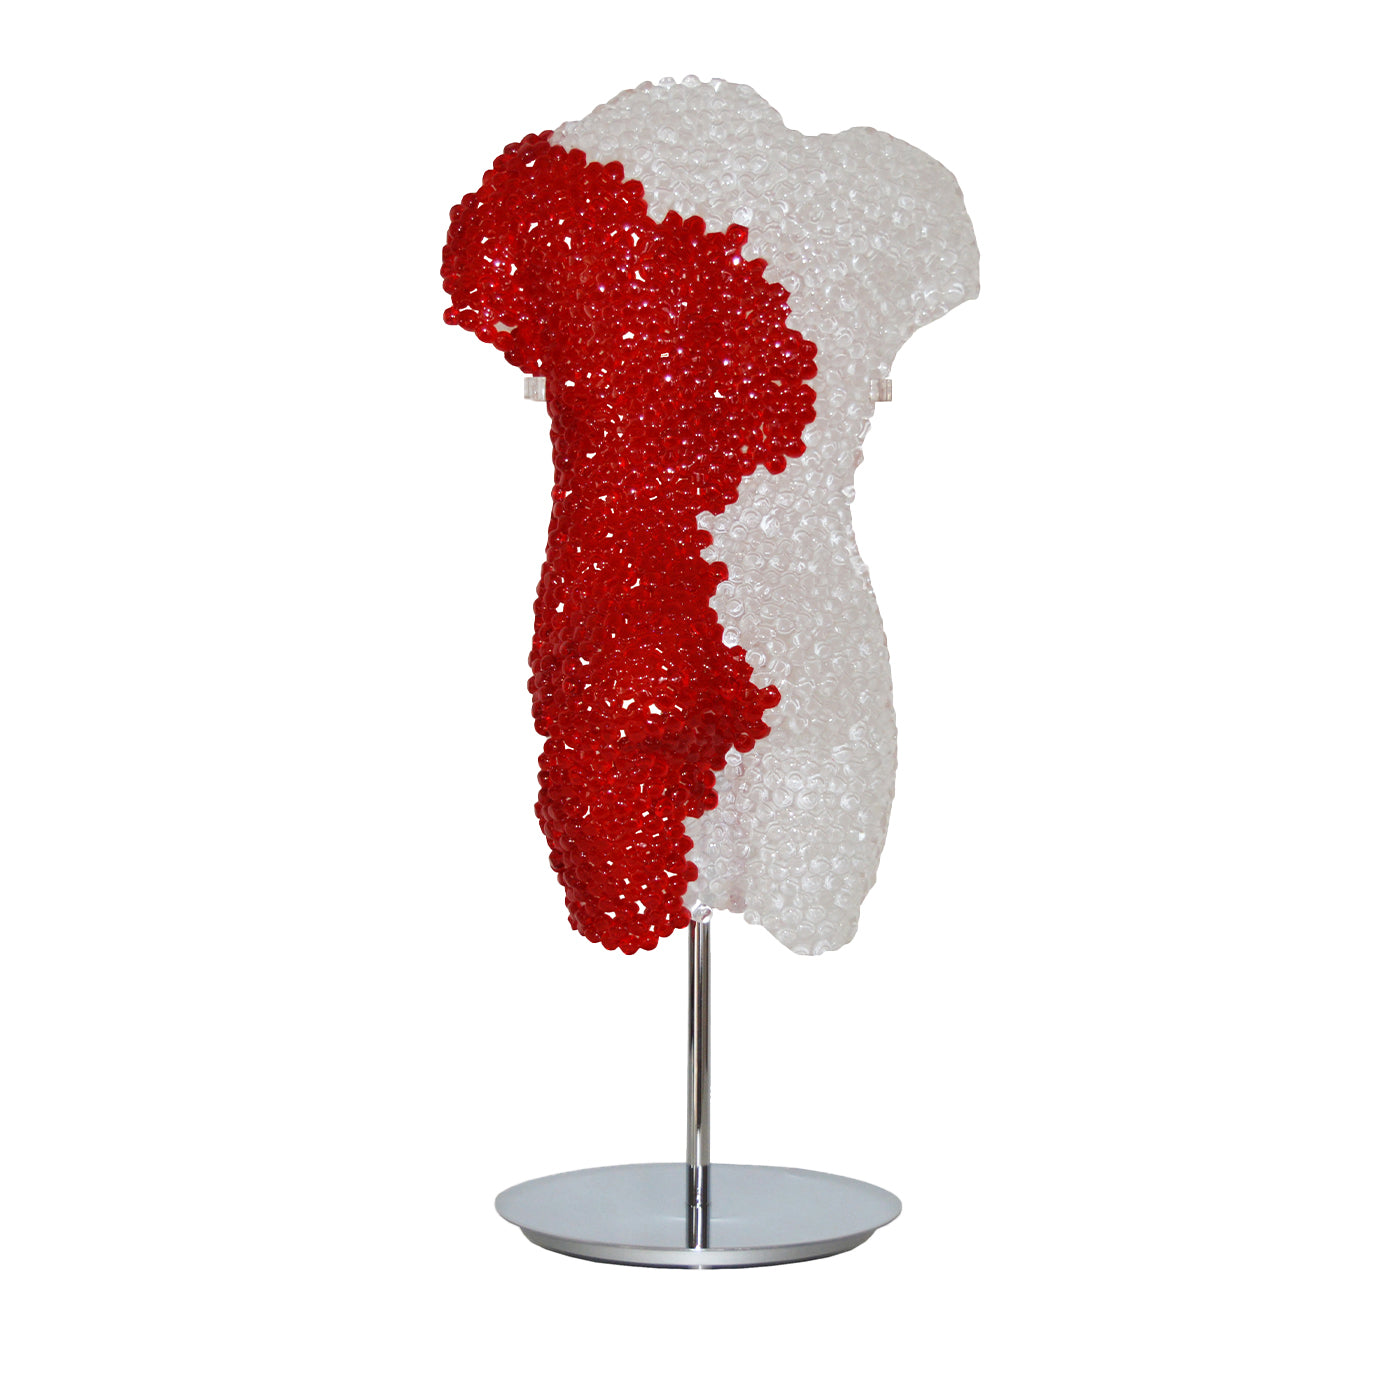 Escultura Body Crystal Red con sistema de retroiluminación - Vista principal